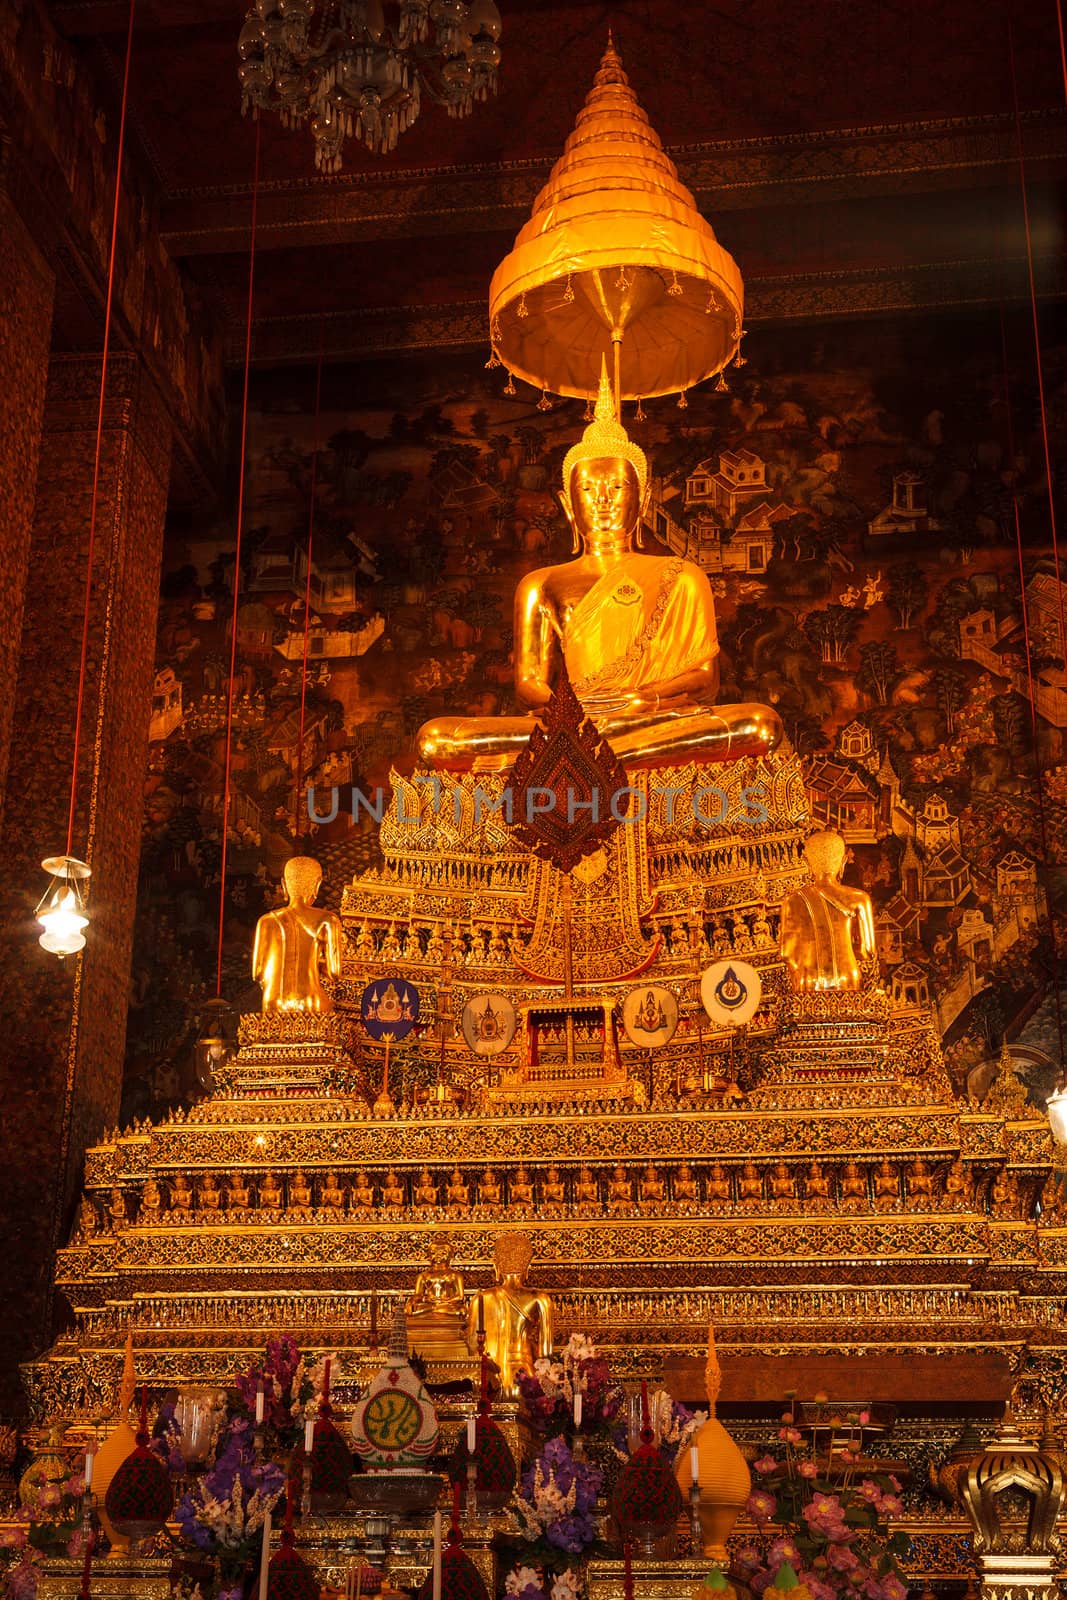 Sitting Buddha statue, Thailand by dimol